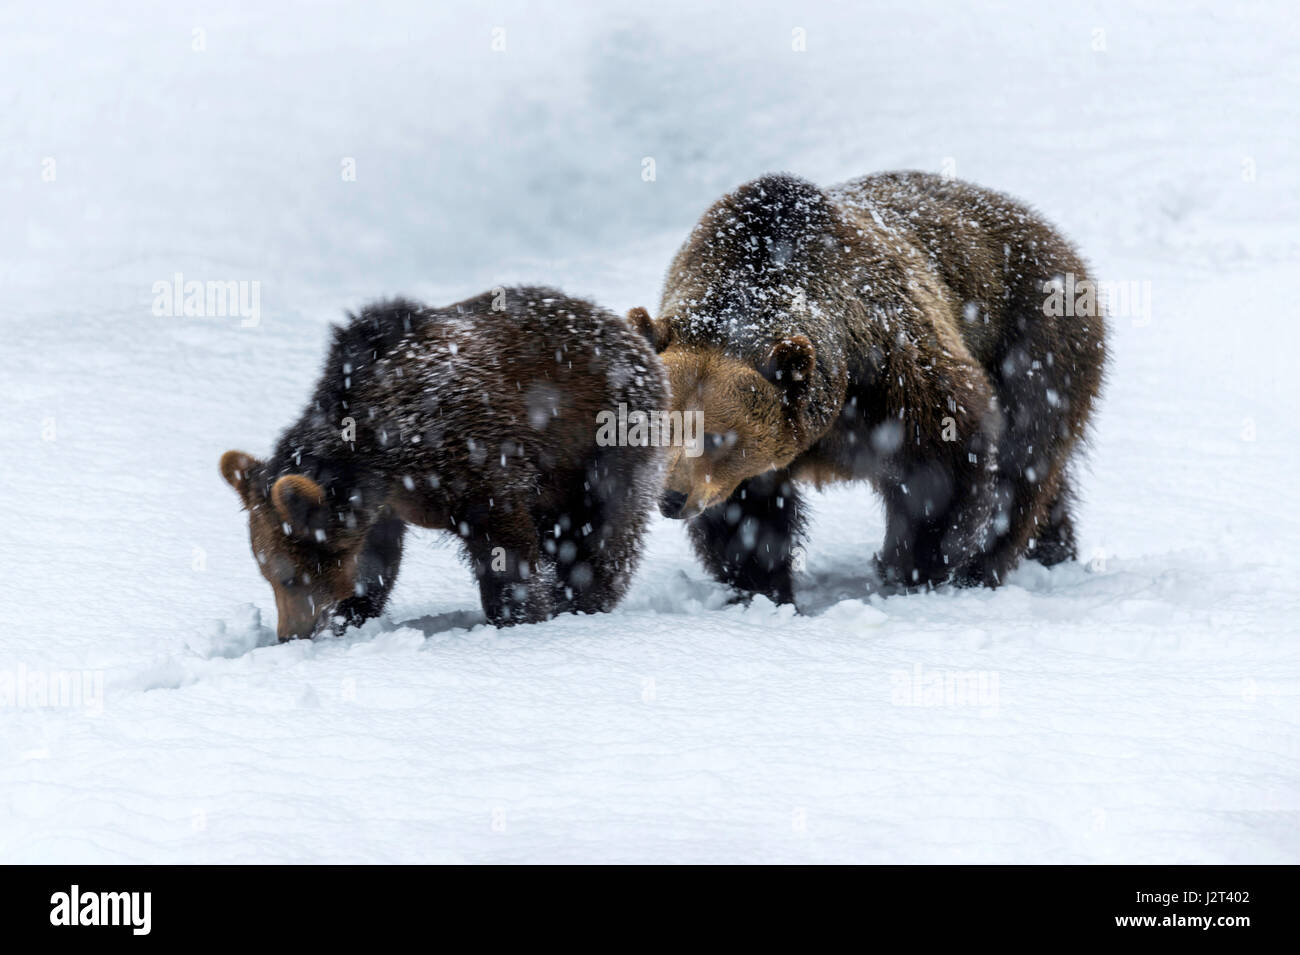 Par de osos pardos euroasiática, Madre y Cub (Ursus arctos) caminando por el sendero en medio de la tormenta de nieve del invierno. Foto de stock